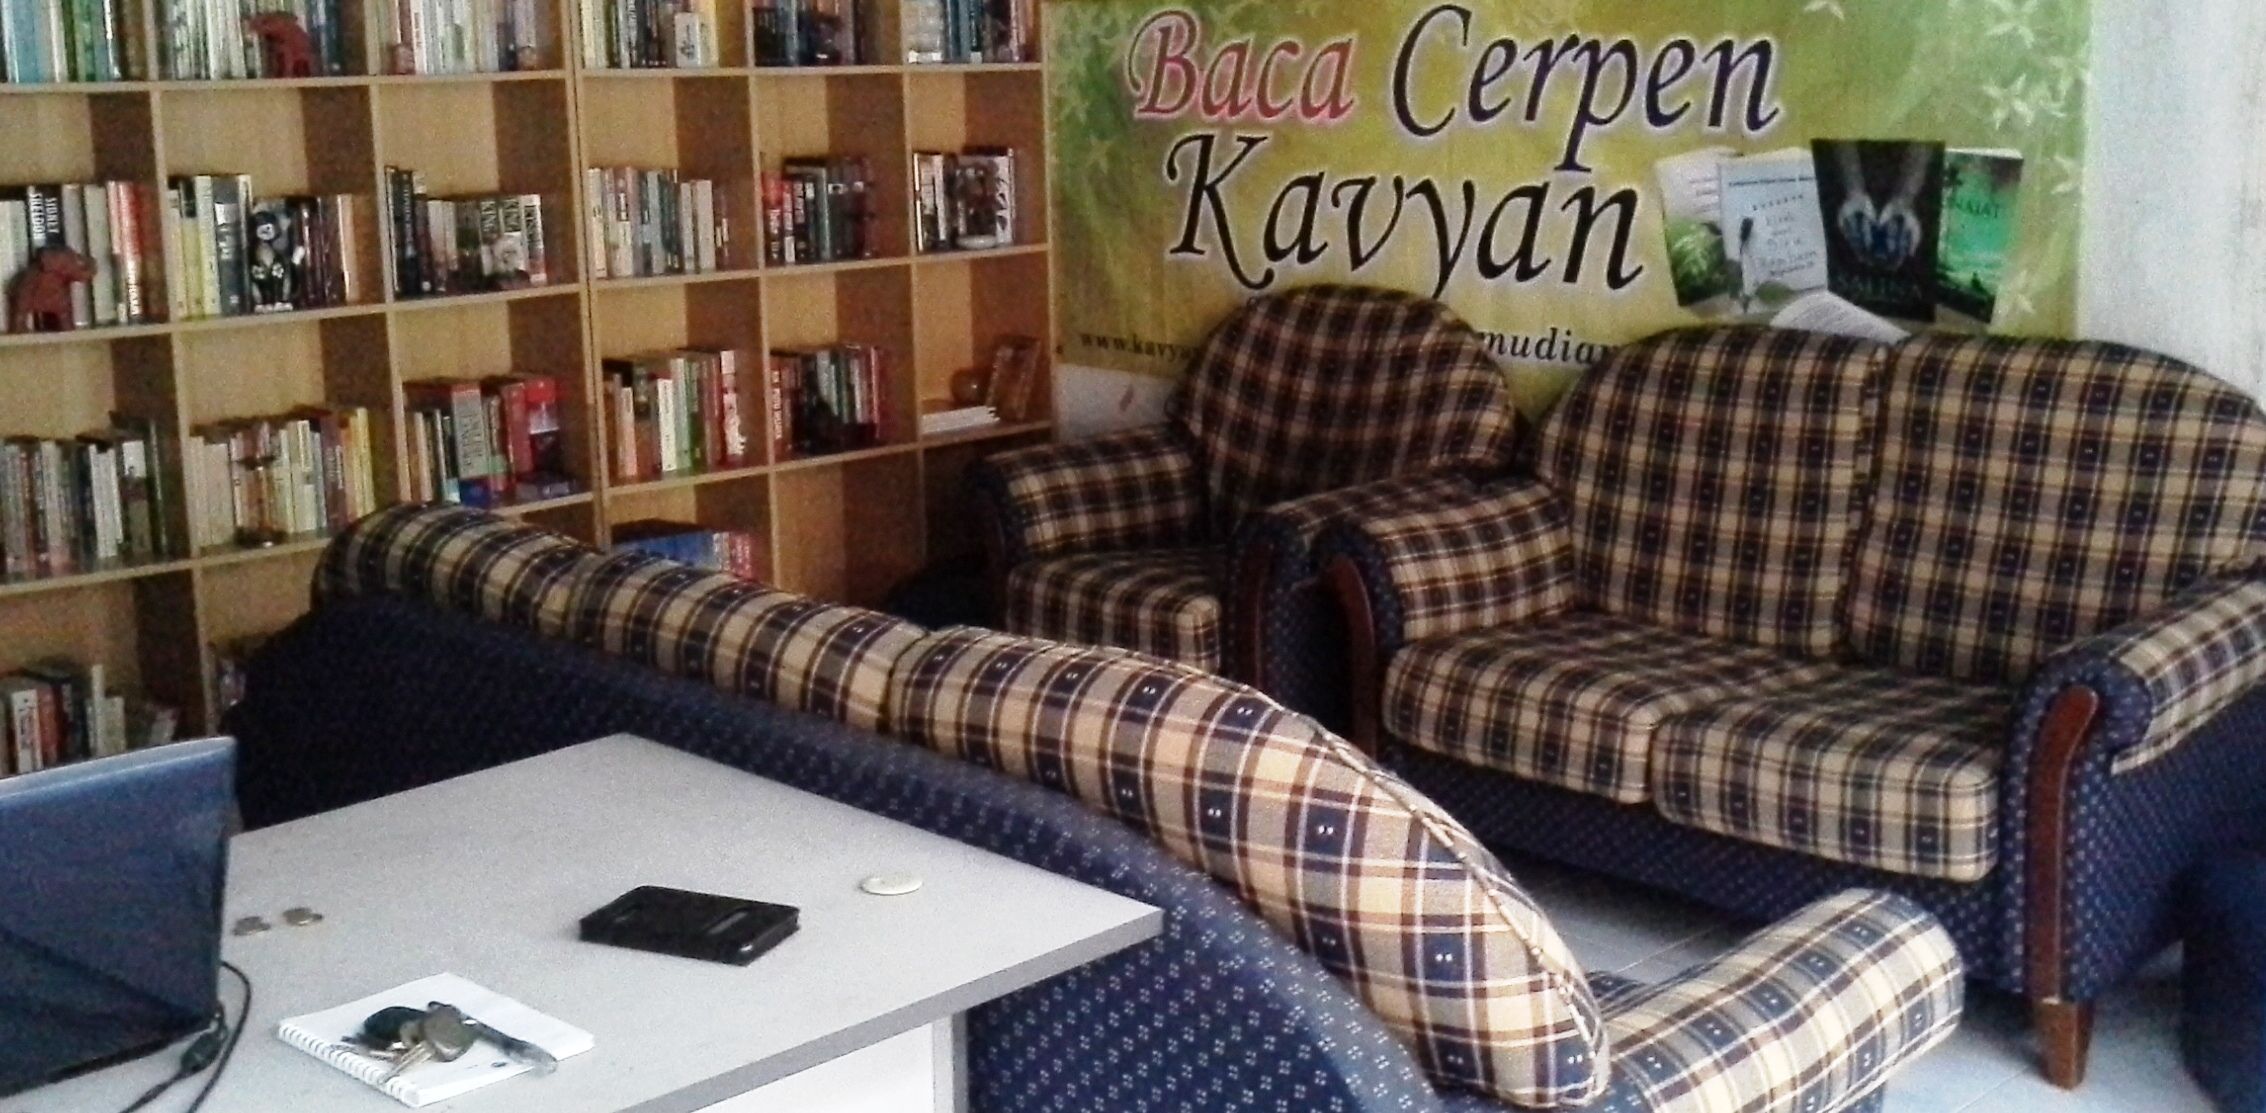 Rumah Kavyan bukan hanya tempat aktiviti bahasa, sastera, seni dan budaya.